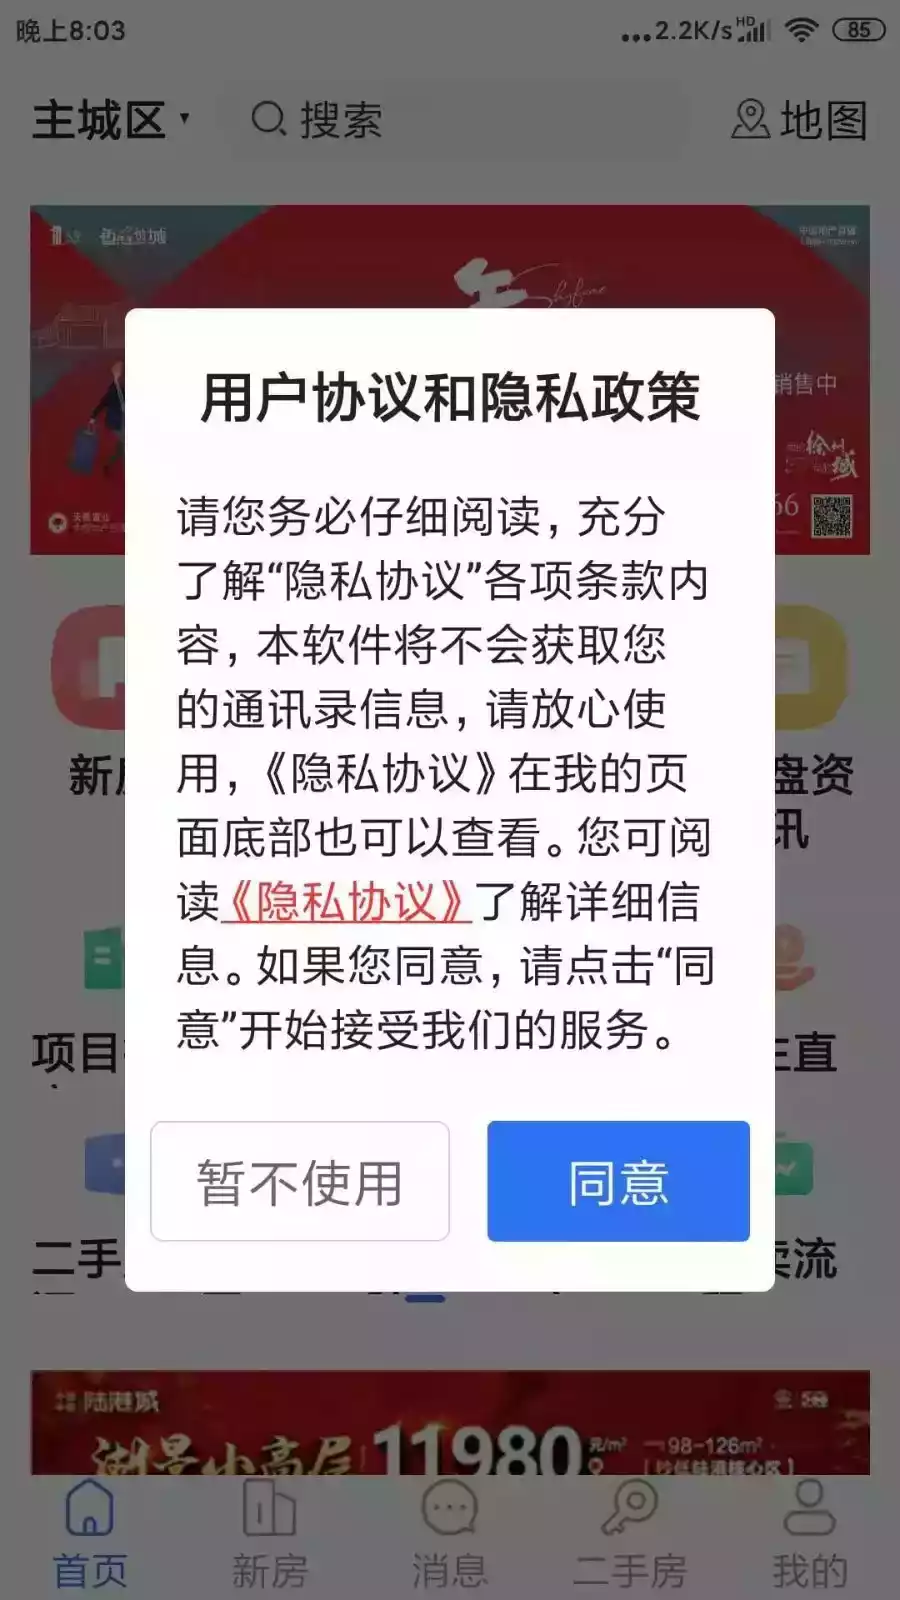 徐房信息网app查询 截图